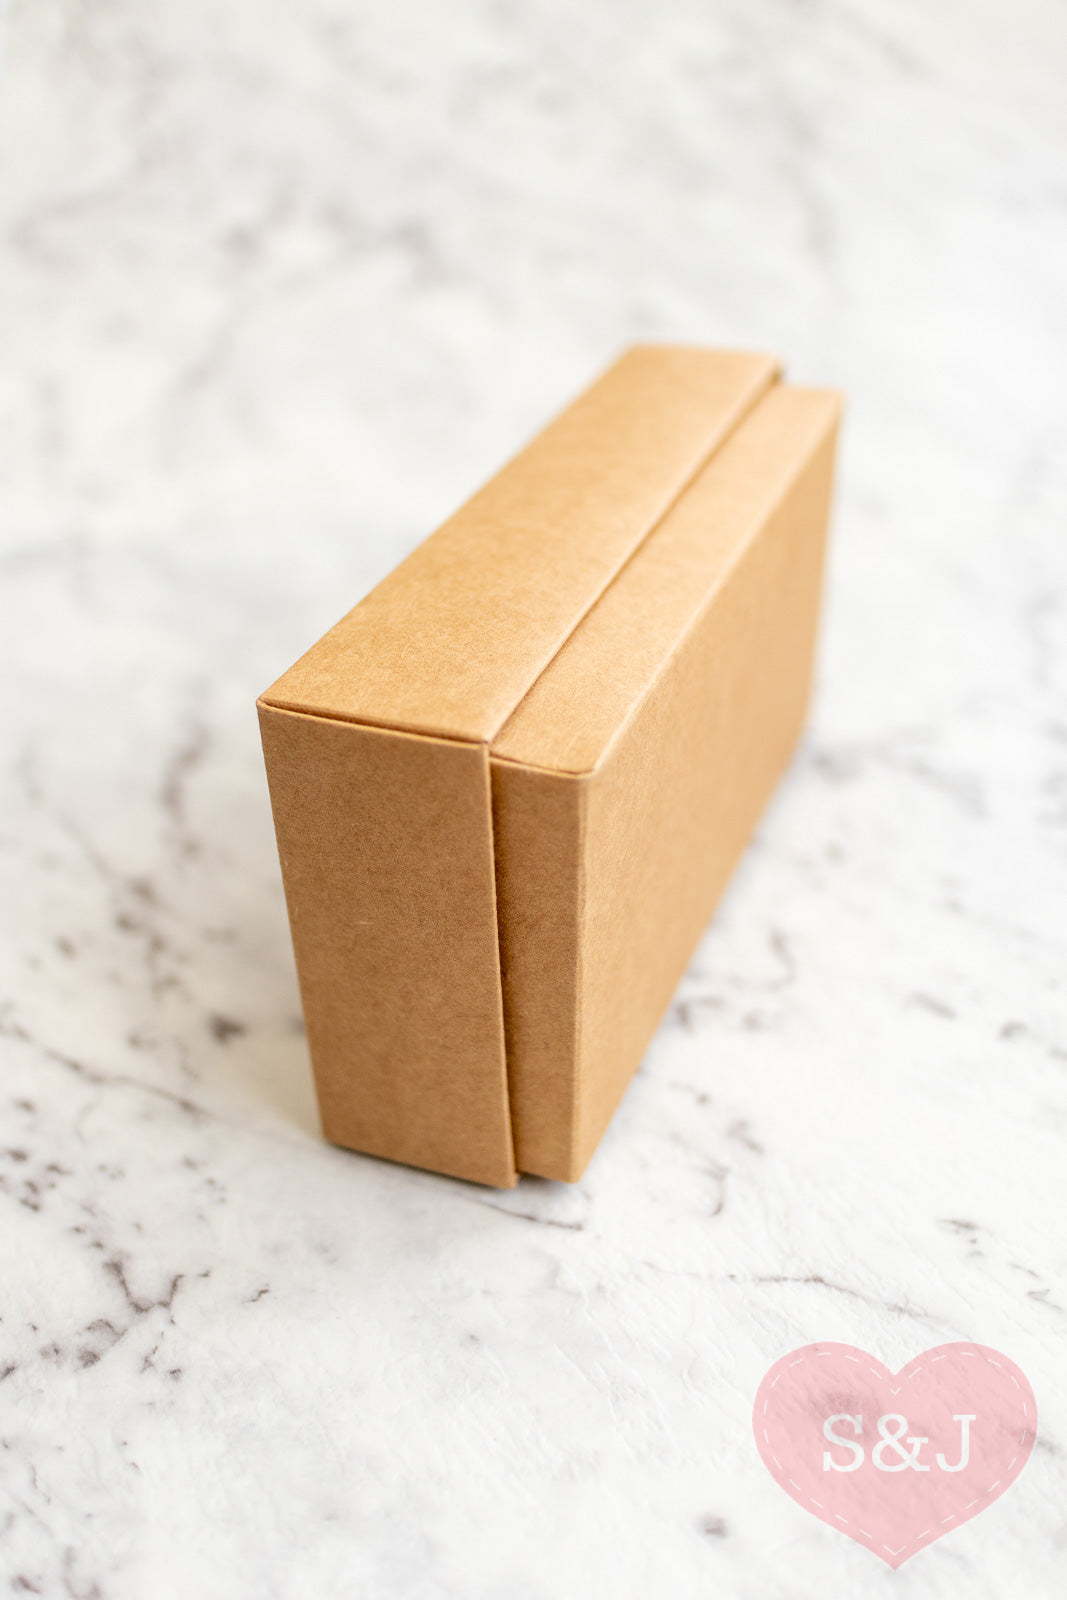 Caja cuadrada cartón Kraft con tapa integrada 29x29x5cm 50uds